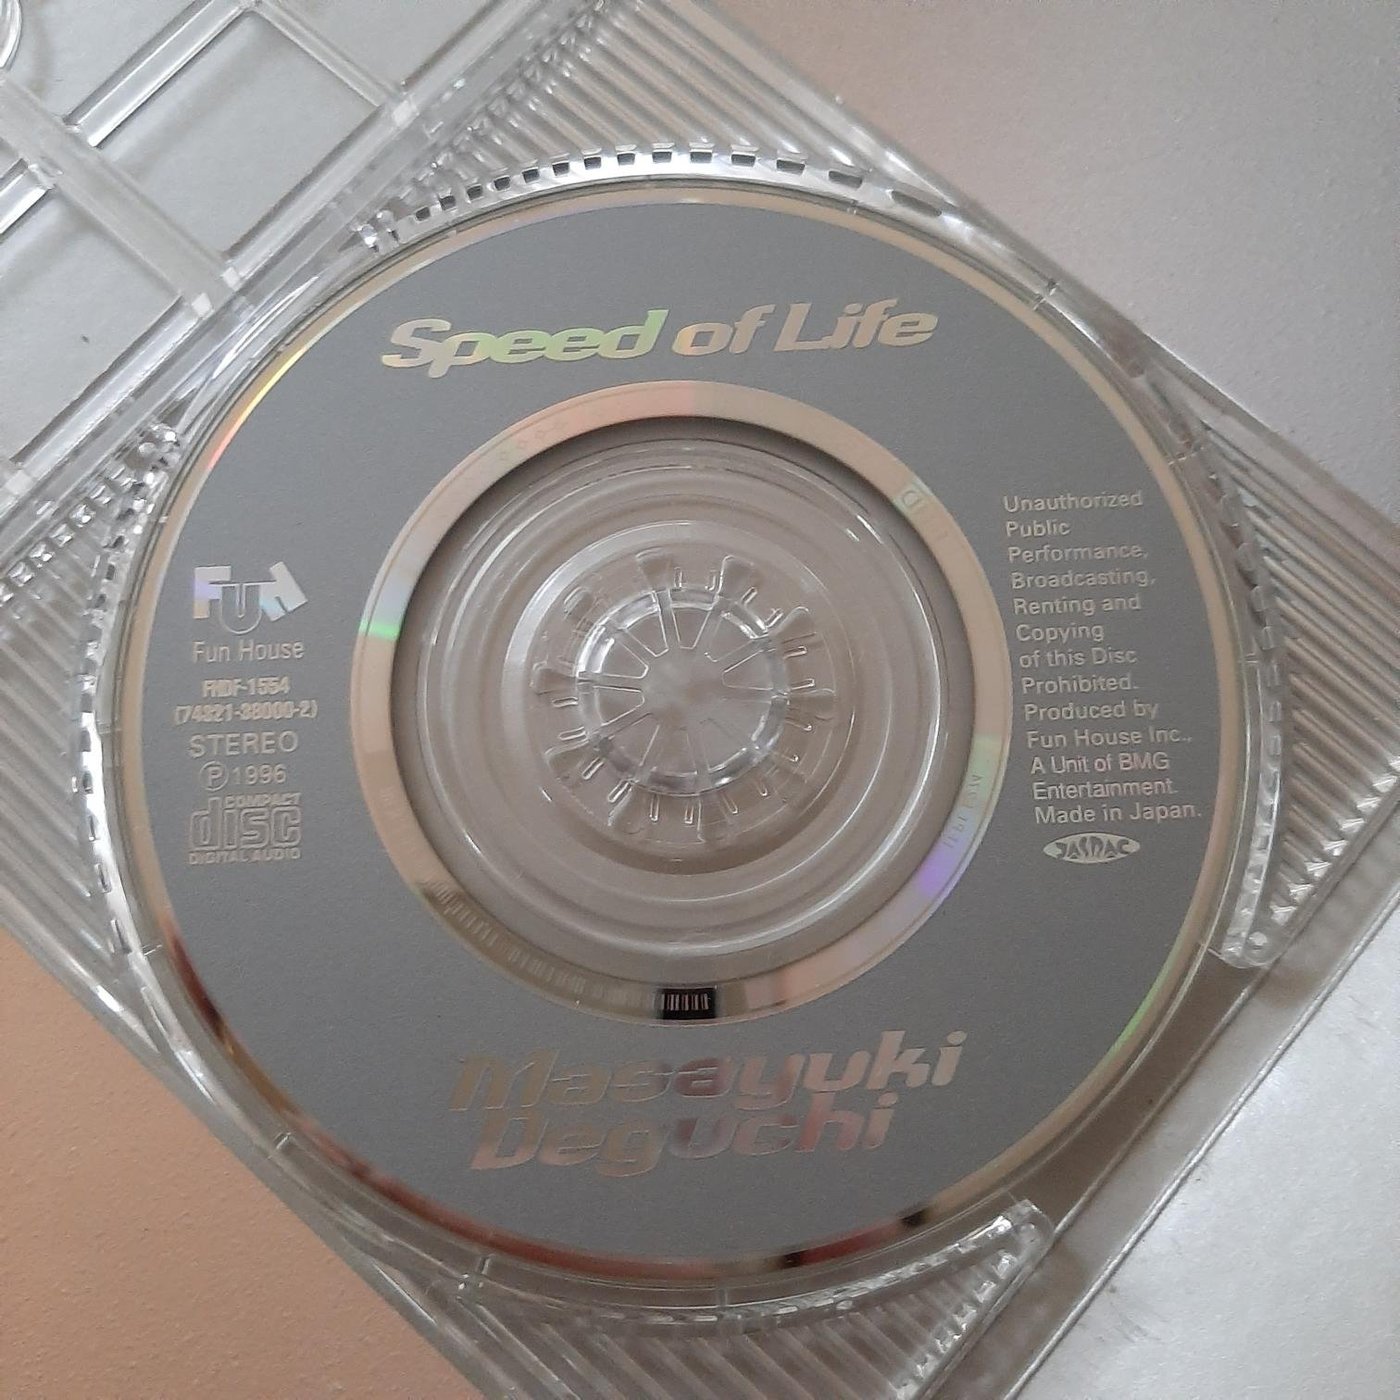 【裊裊影音】出口雅之Masayuki Deguchi-Speed Of Life日版8cm單曲 